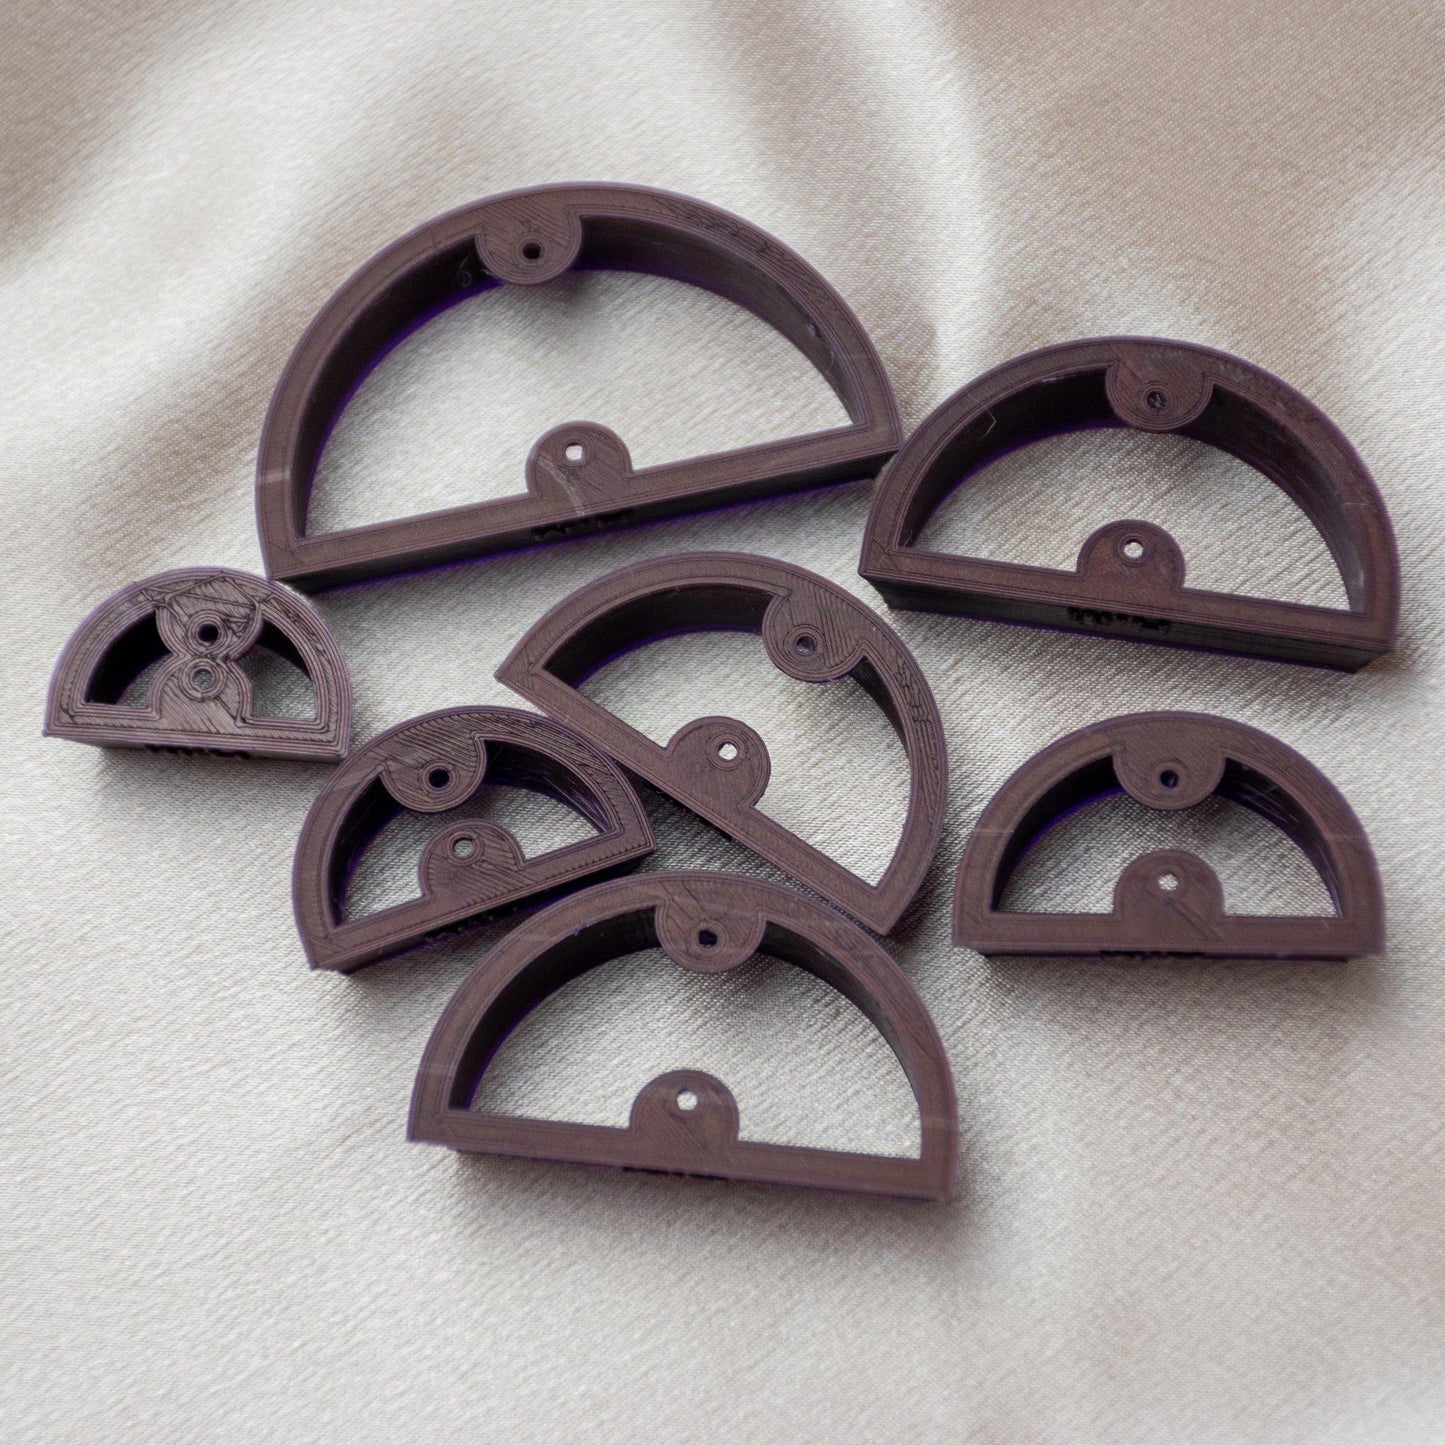 Half Circle Cutters - handmade earrings - handcrafted earrings - Saint Petersburg, Florida